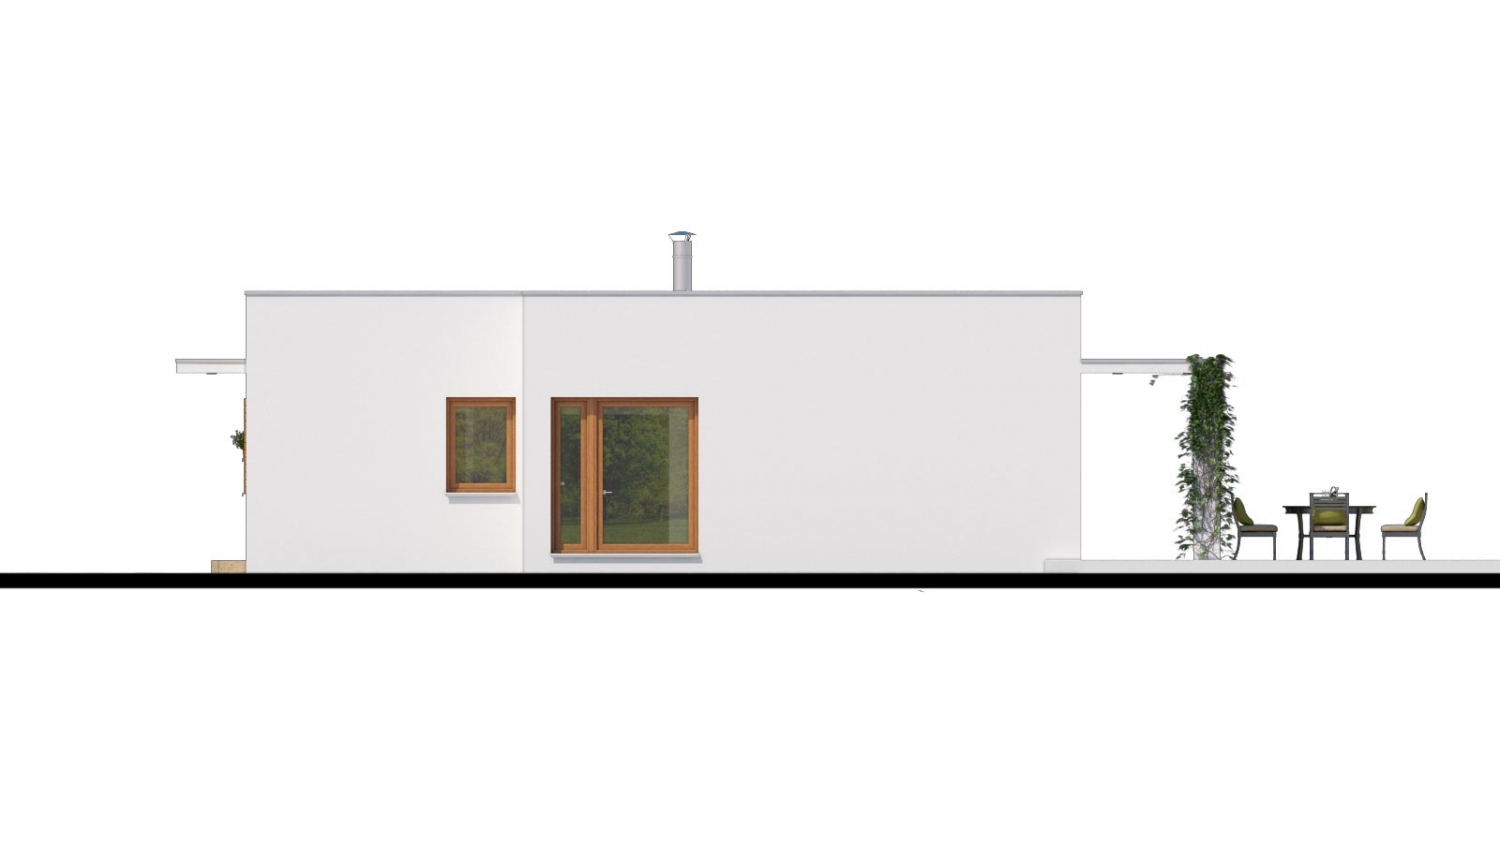 Pohľad 2. - Luxusní 4 - pokojový rodinný dům s plochou rovnou střechou a krytým stáním. Obytná část je orientována do zahrady na terasu.